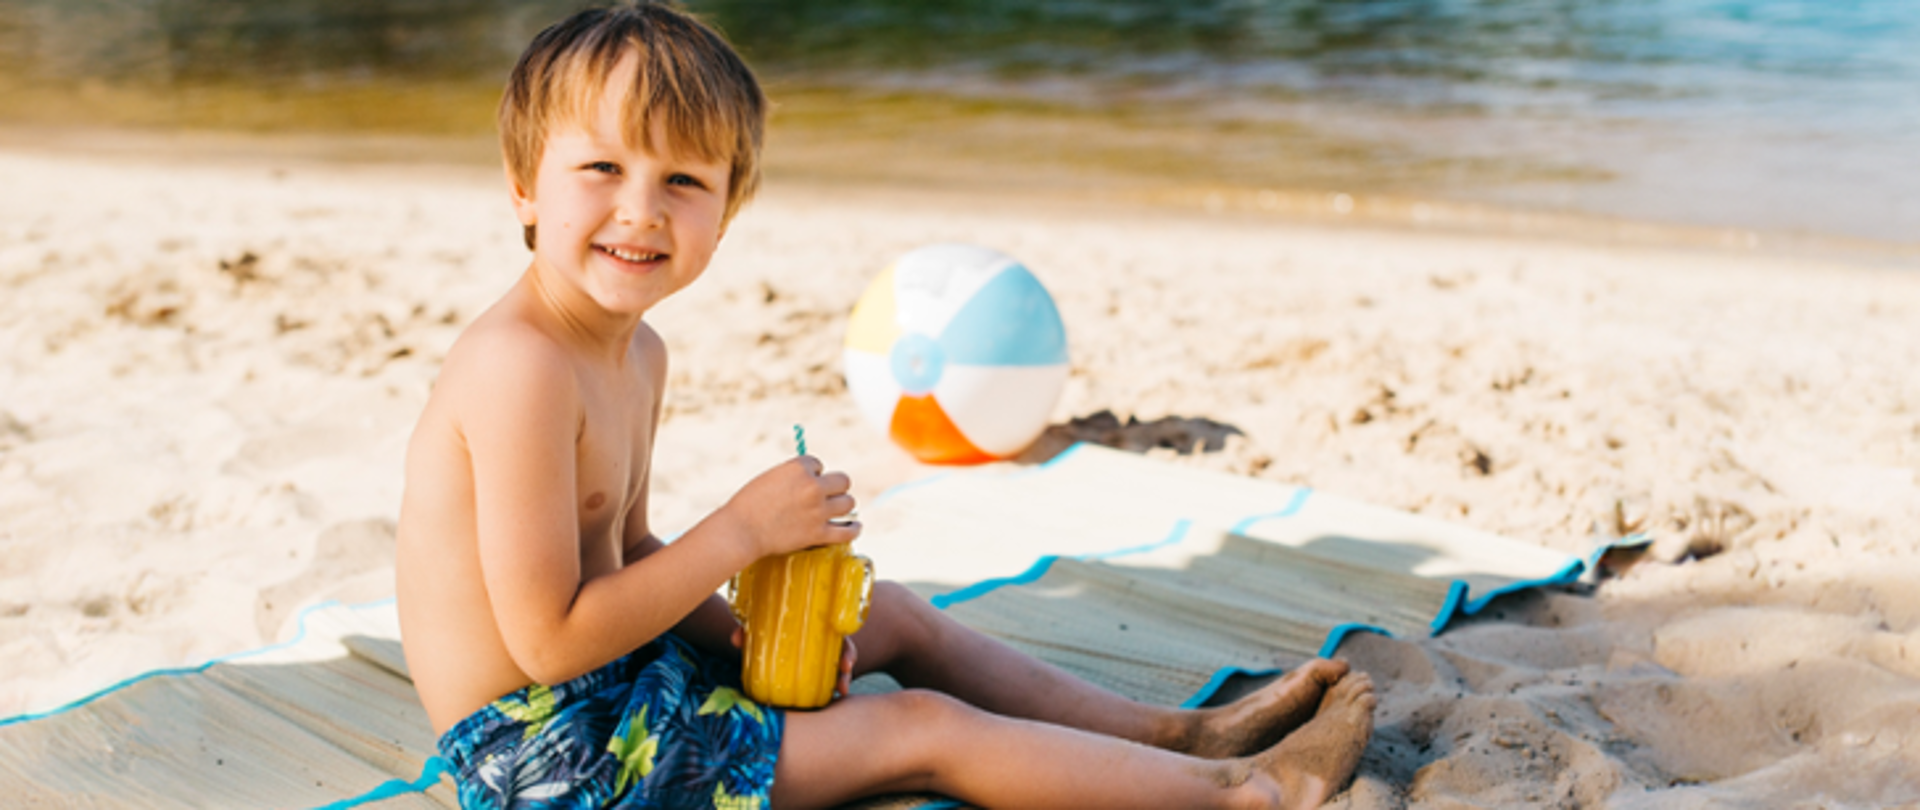 Zdjęcie przedstawia chłopca na plaży, który pije sok.